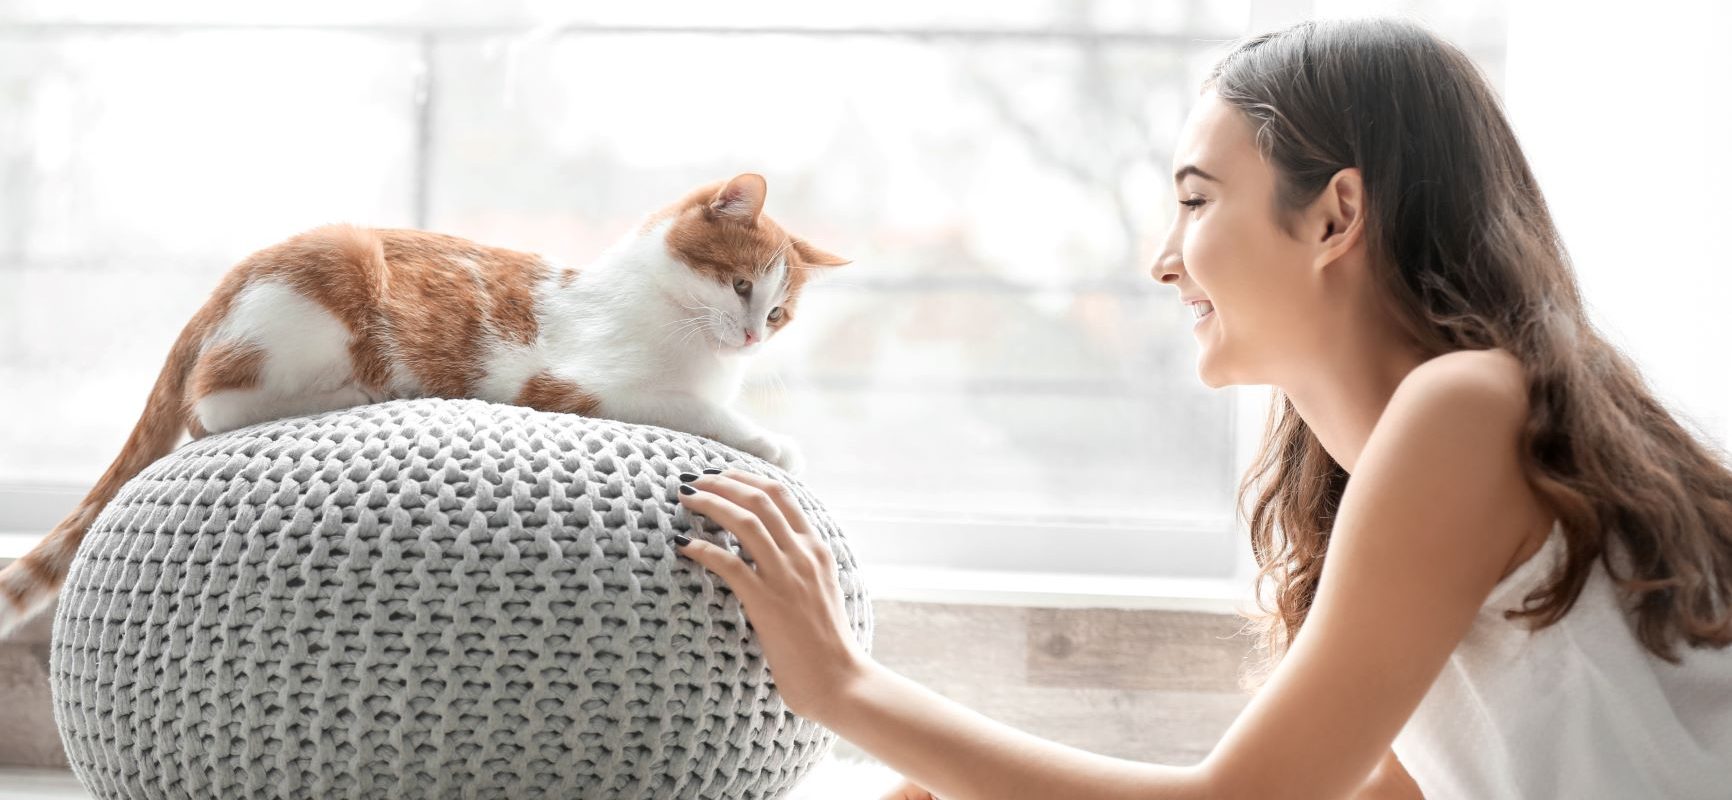 Felinoterapia - na czym polega terapia w towarzystwie kota? Młoda dziewczyna bawi się z kotem w domu.